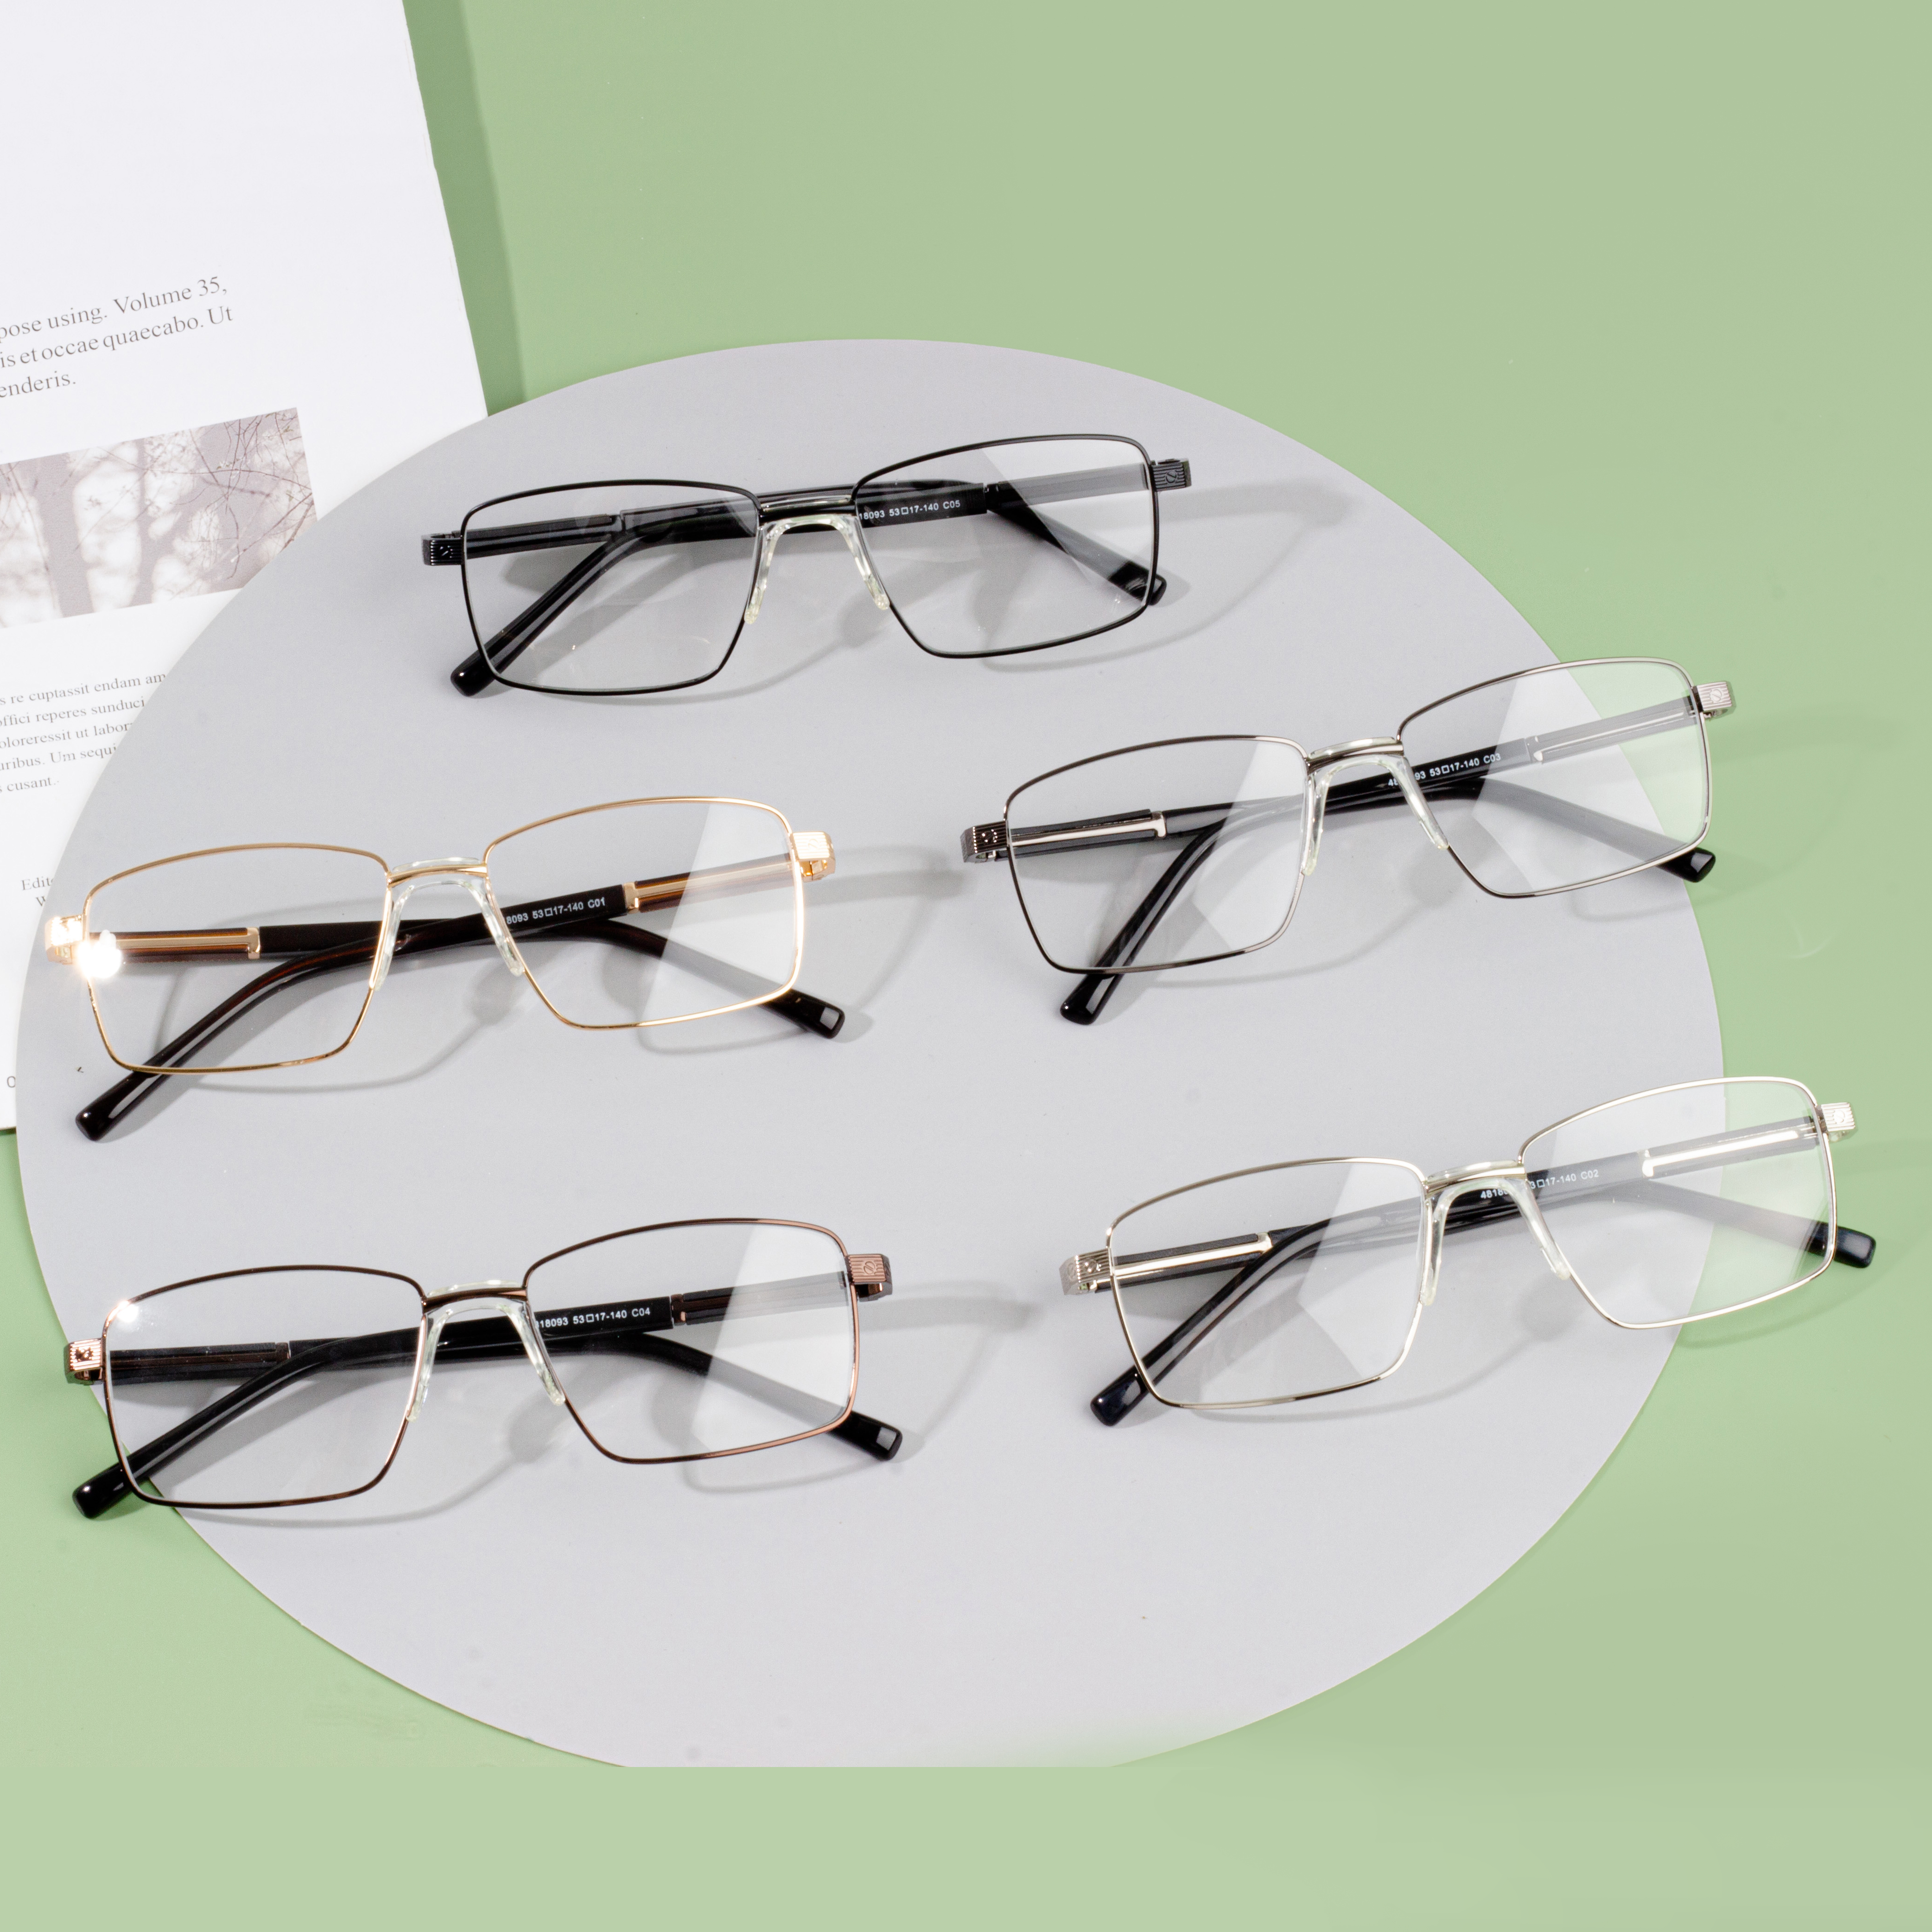 ახალი დიზაინის ოპტიკური სათვალეების ჩარჩოები მამაკაცებისთვის